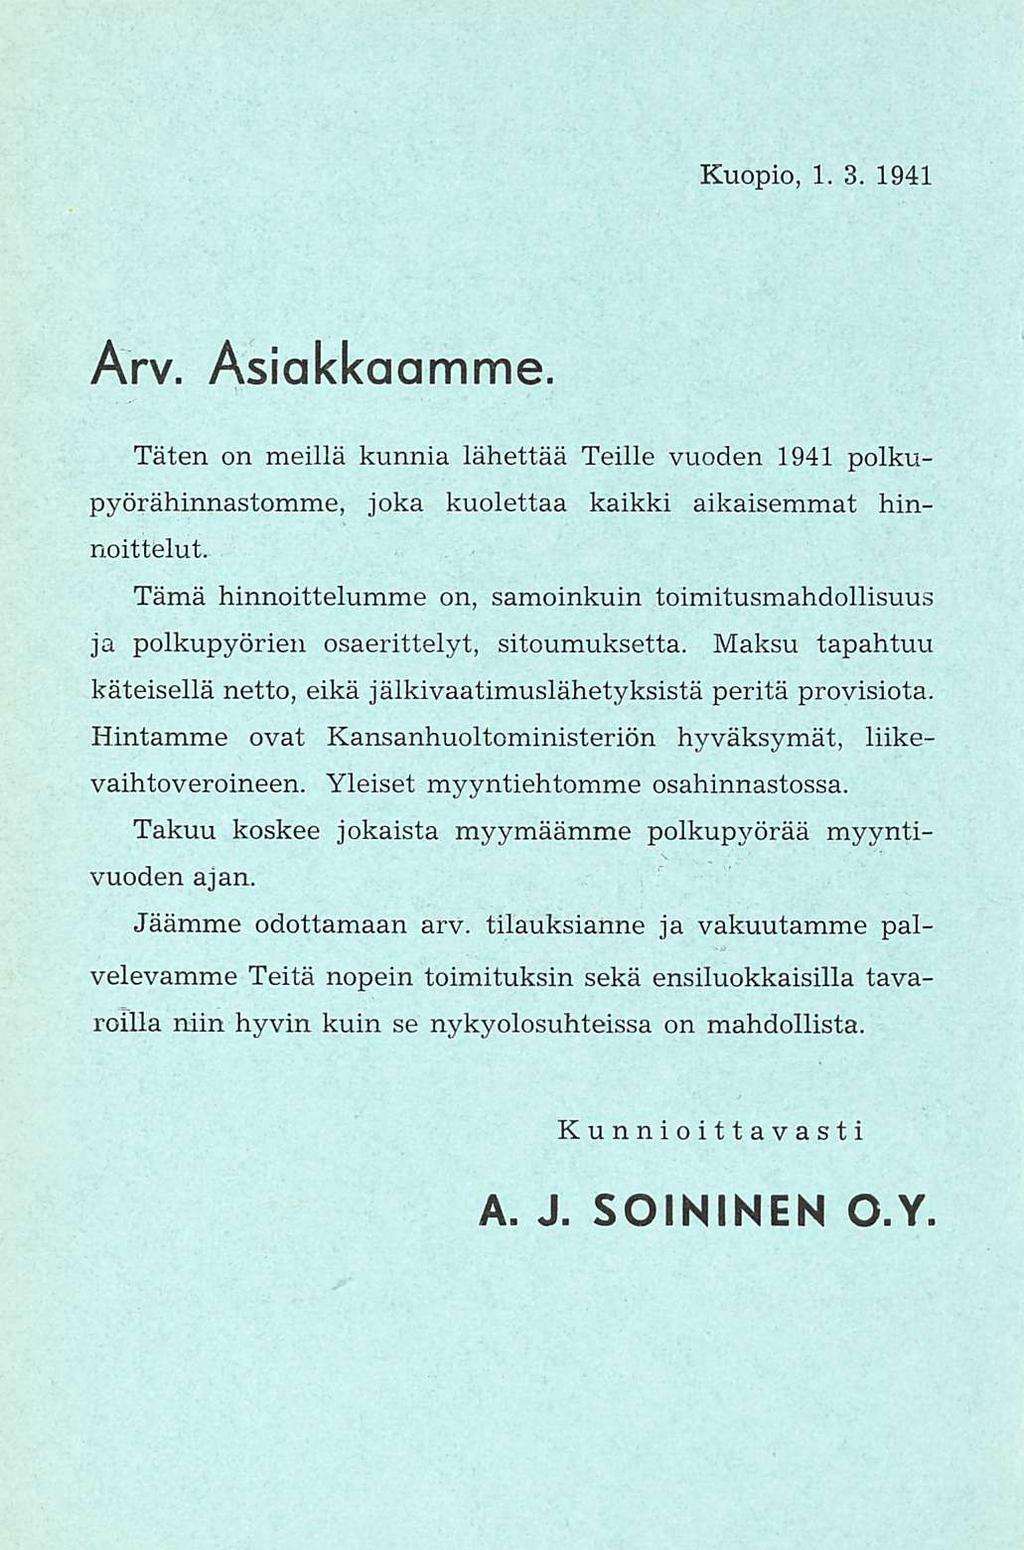 Kuopio, 01.03.1941 Arv. Asiakkaamme. Täten on meillä kunnia lähettää Teille vuoden 1941 polkupyörähinnastomme, joka kuolettaa kaikki aikaisemmat hinnoittelut.